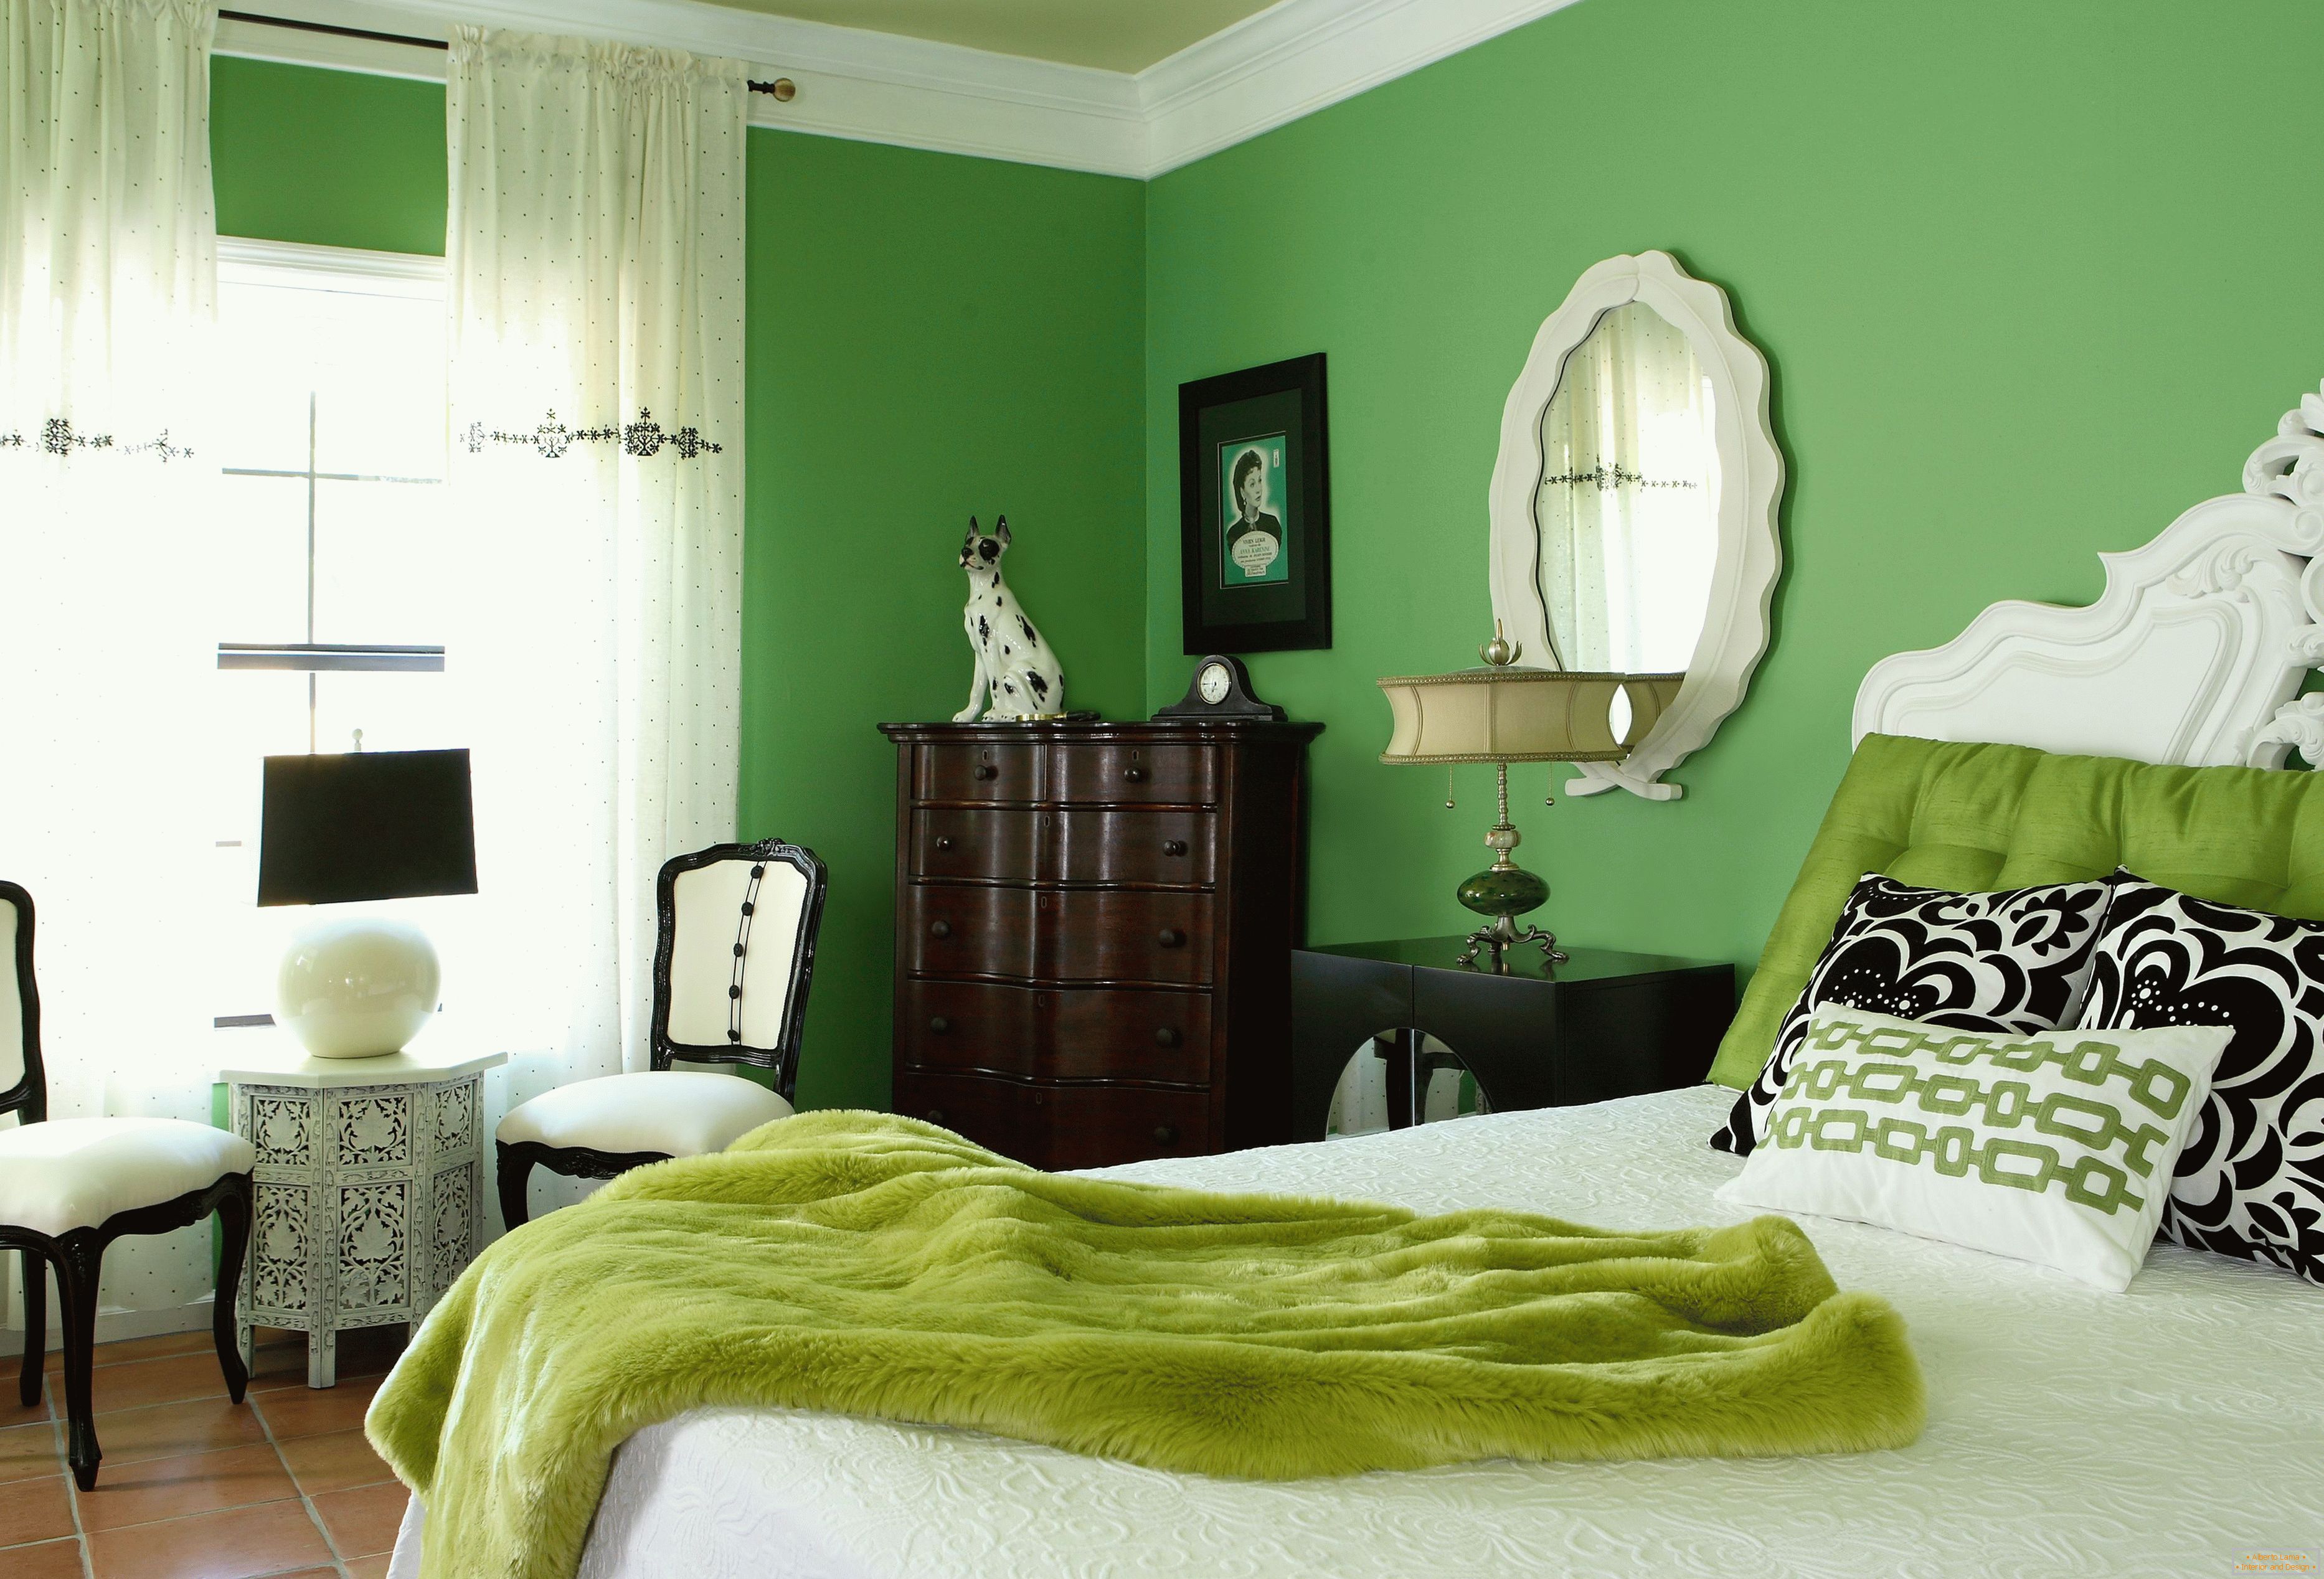 Spavaća soba u zelenim bojama